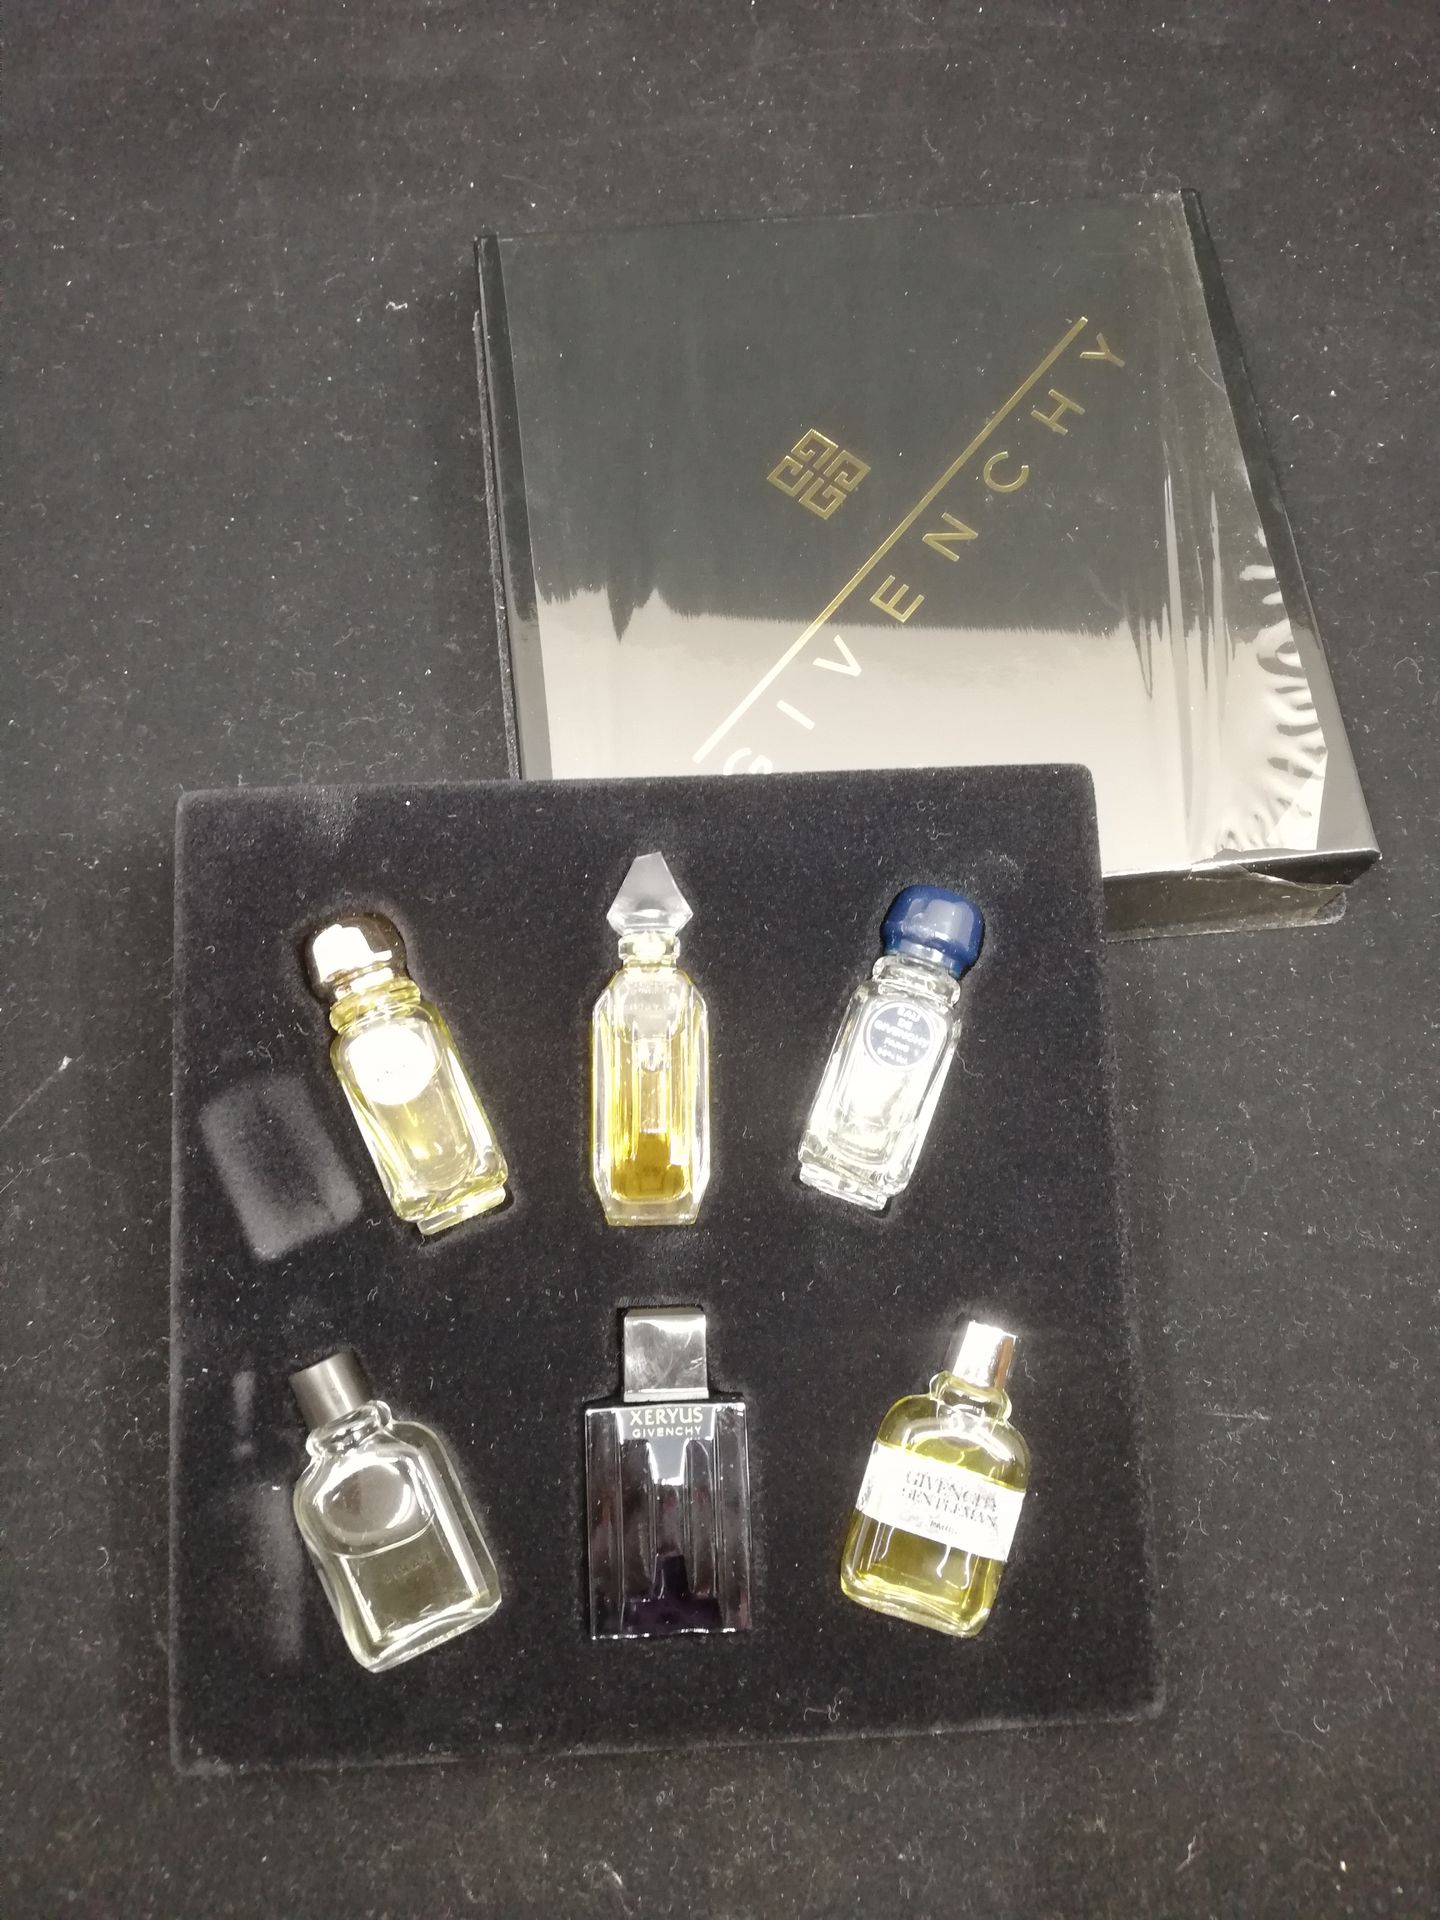 Null 纪梵希 - (1990年代)

两个促销盒，每盒有六支微型香水。